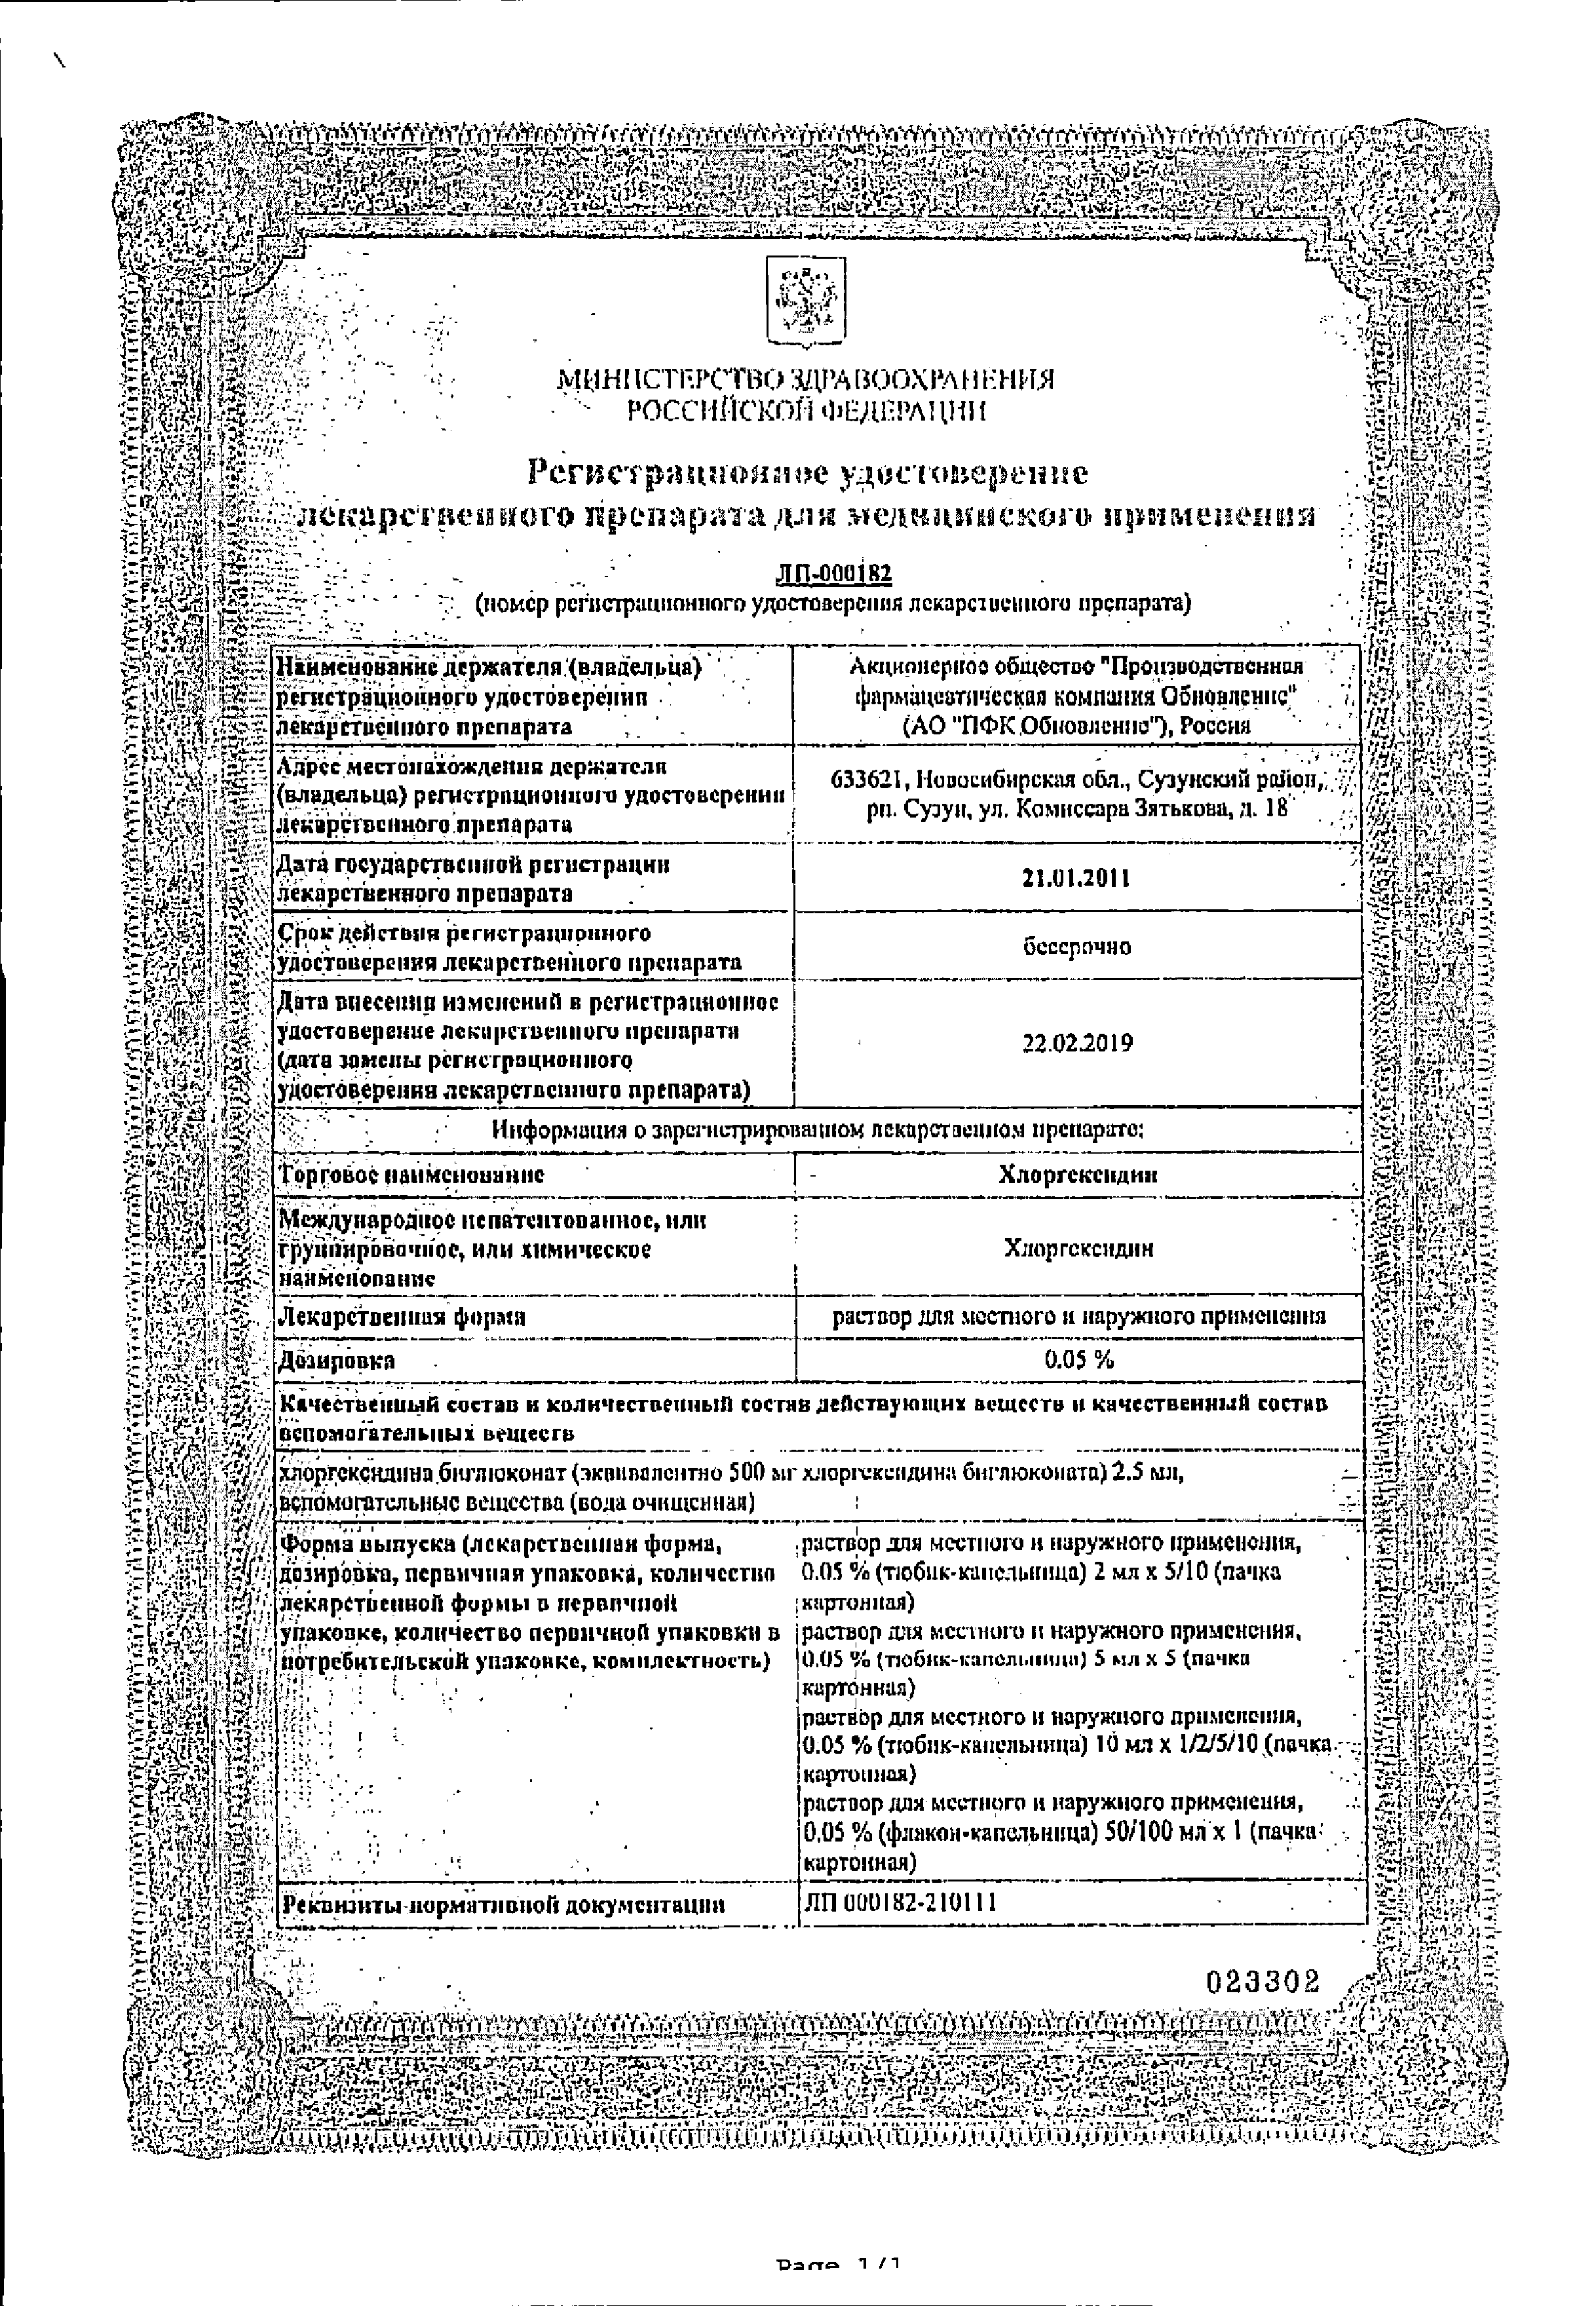 Хлоргексидин Renewal сертификат